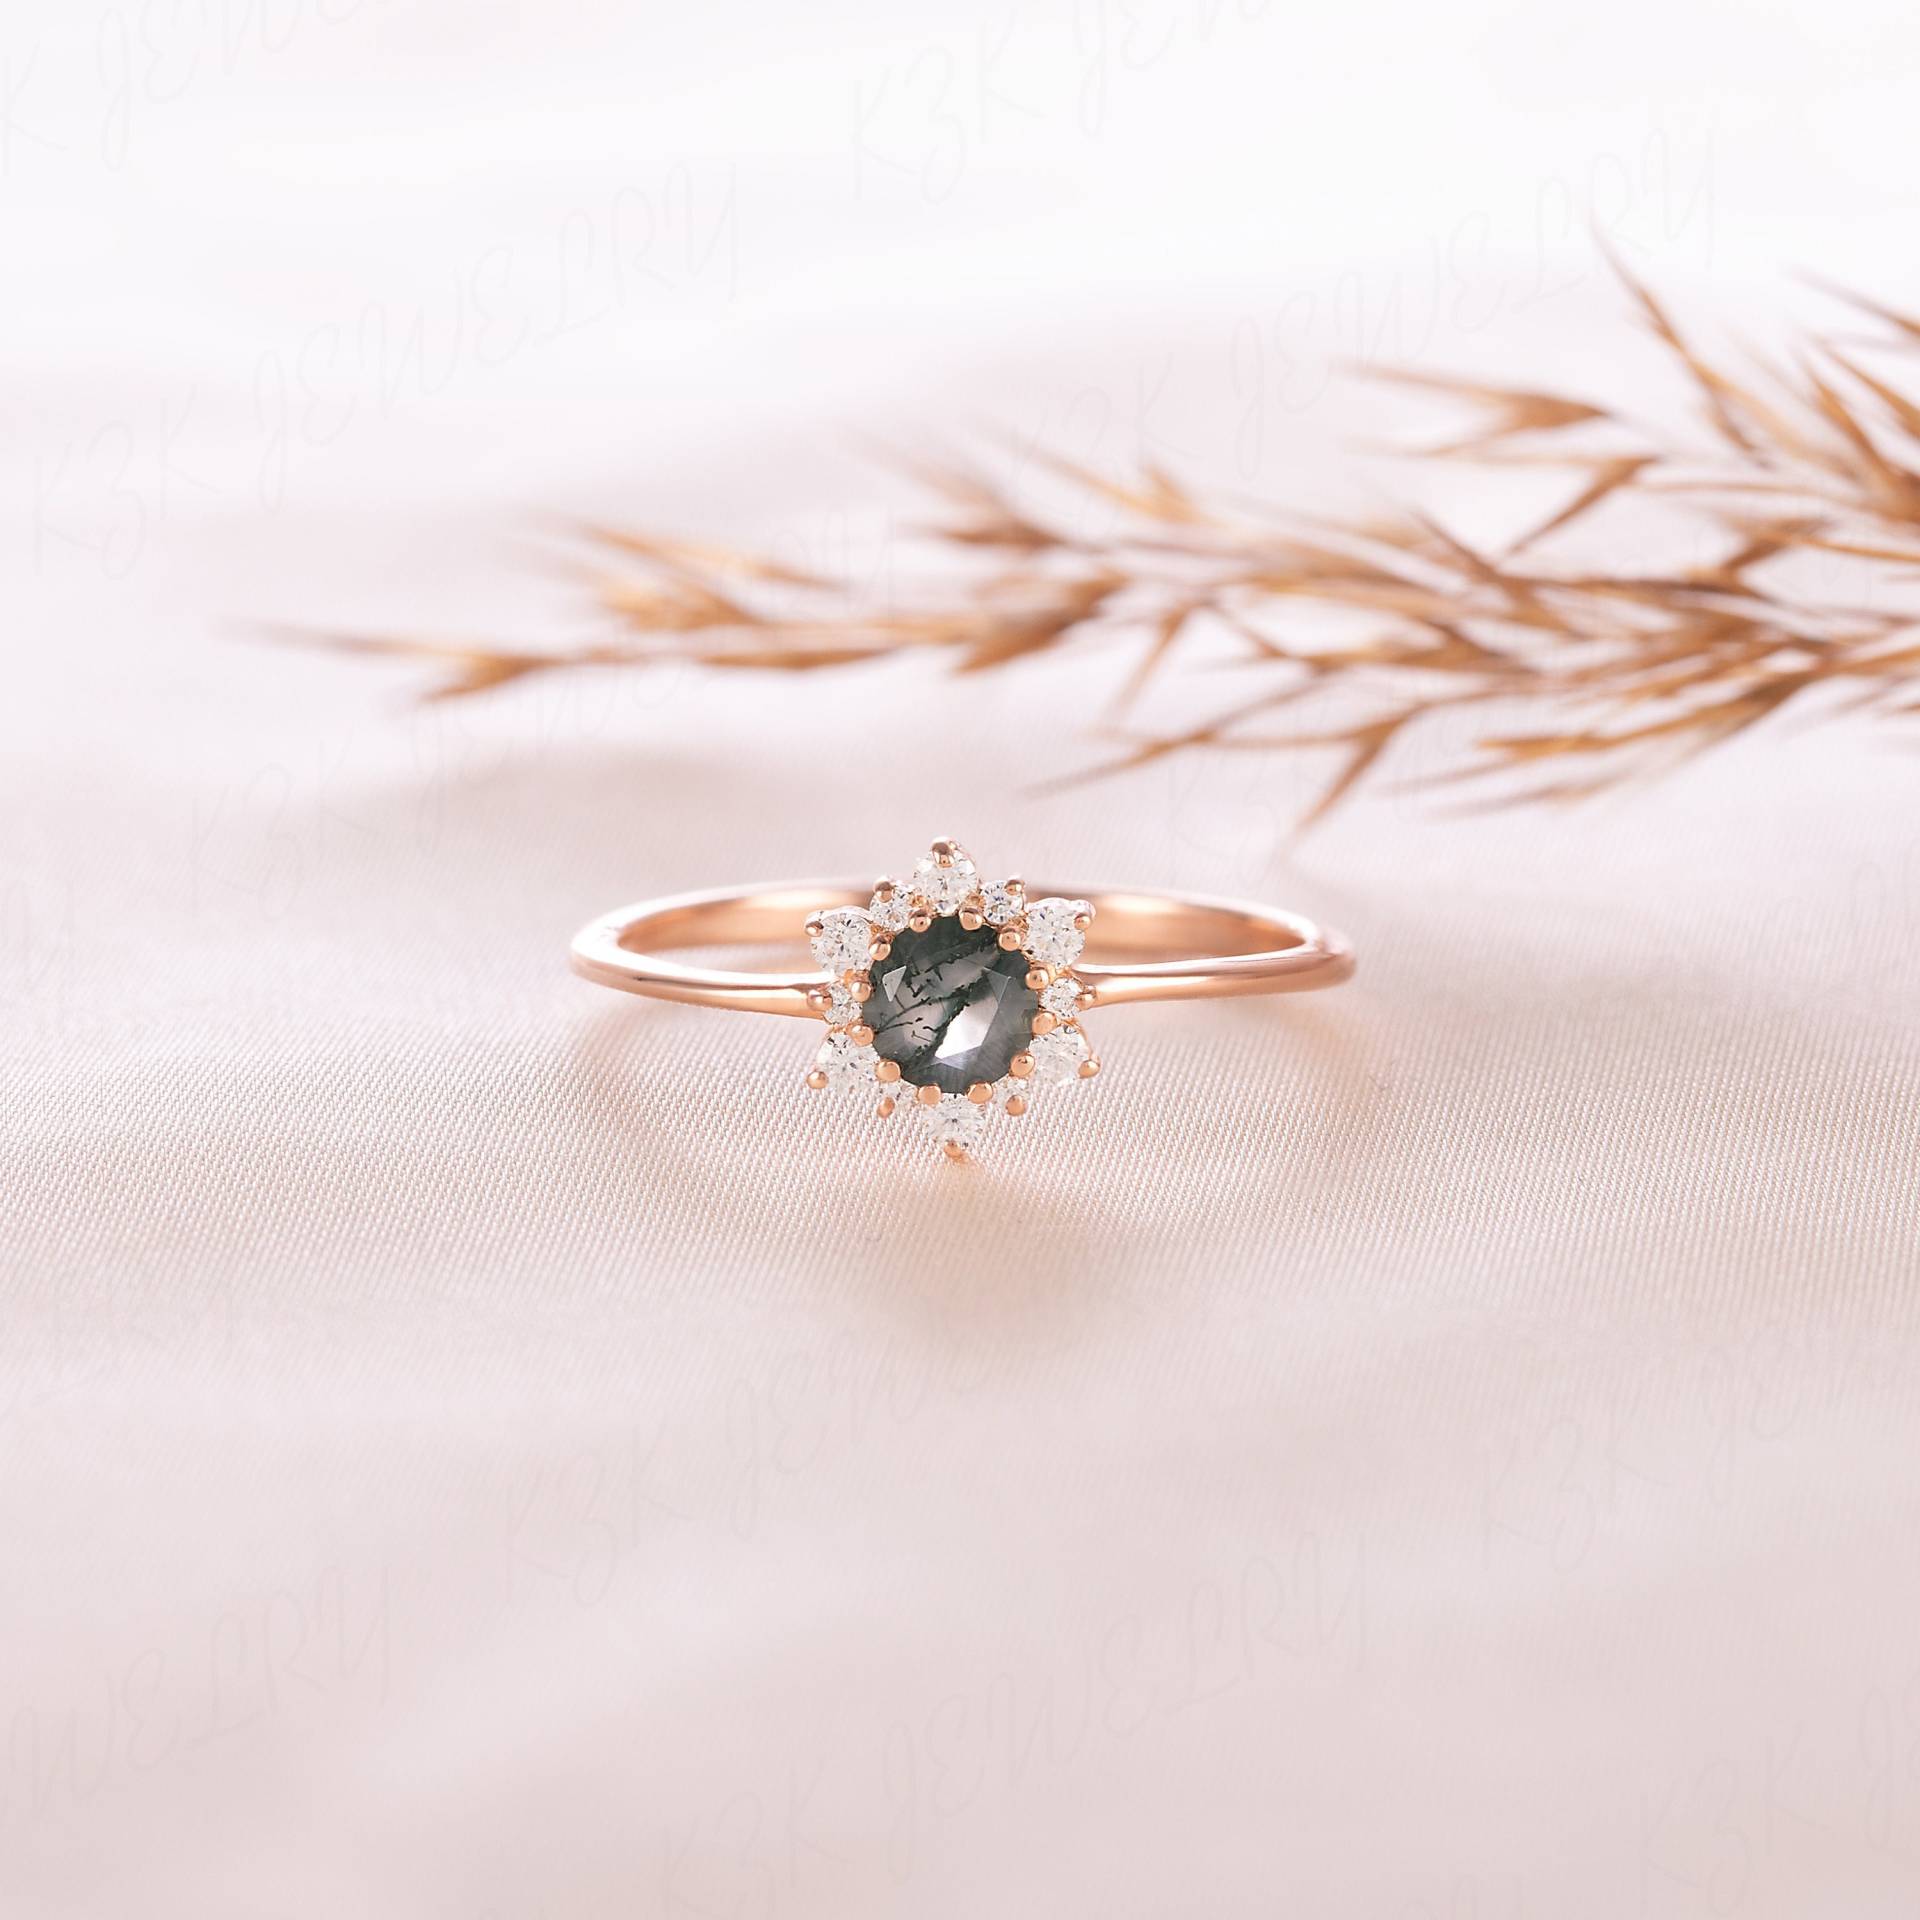 Frauen Rose Gold Minimalist Moos Achat Halo Verlobungsring, Einzigartiger Art Deco Versprechen Ring Für Sie, Schneeflocke von KzKJewel